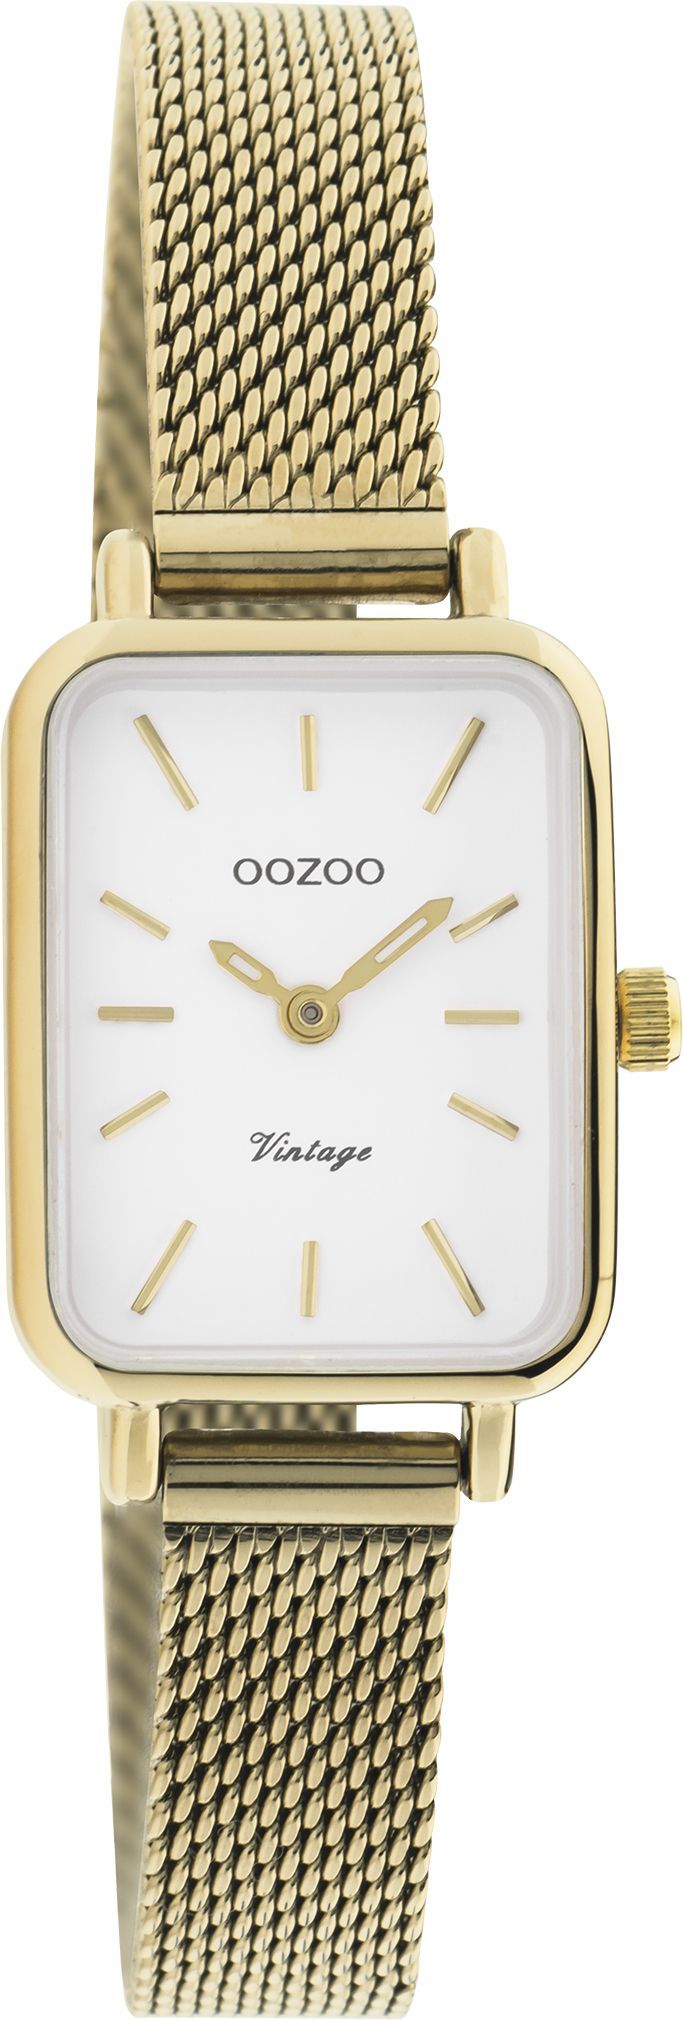 OOZOO Vintage C20268 σε χρυσό χρώμα 